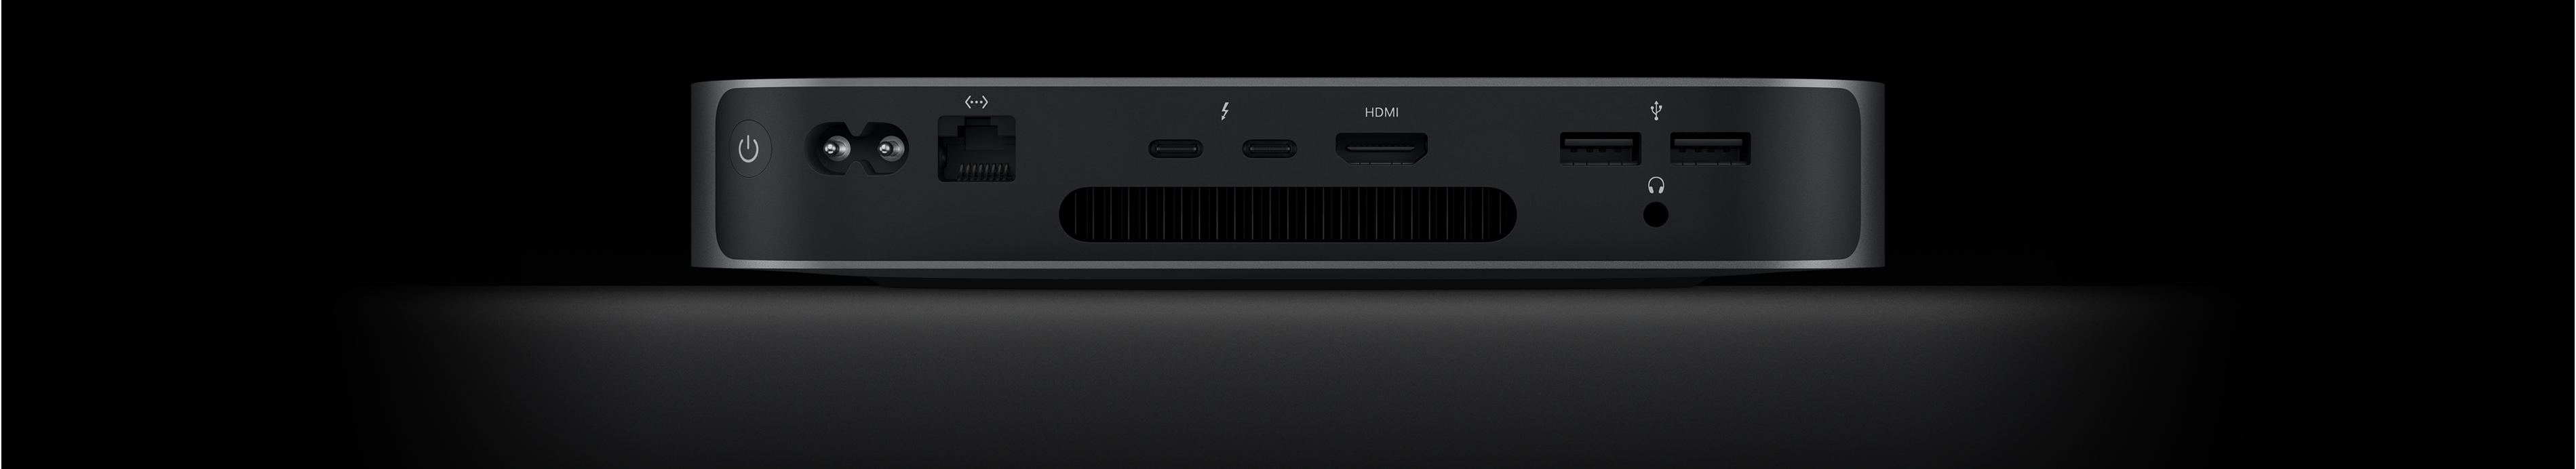 Rückansicht des Mac mini, die die zwei Thunderbolt 4 Anschlüsse, den HDMI Anschluss, zwei USB‑A Anschlüsse, den Kopfhöreranschluss, den Gigabit Ethernet Anschluss, den Netzeingang und den Ein‑/Ausschalter zeigt.